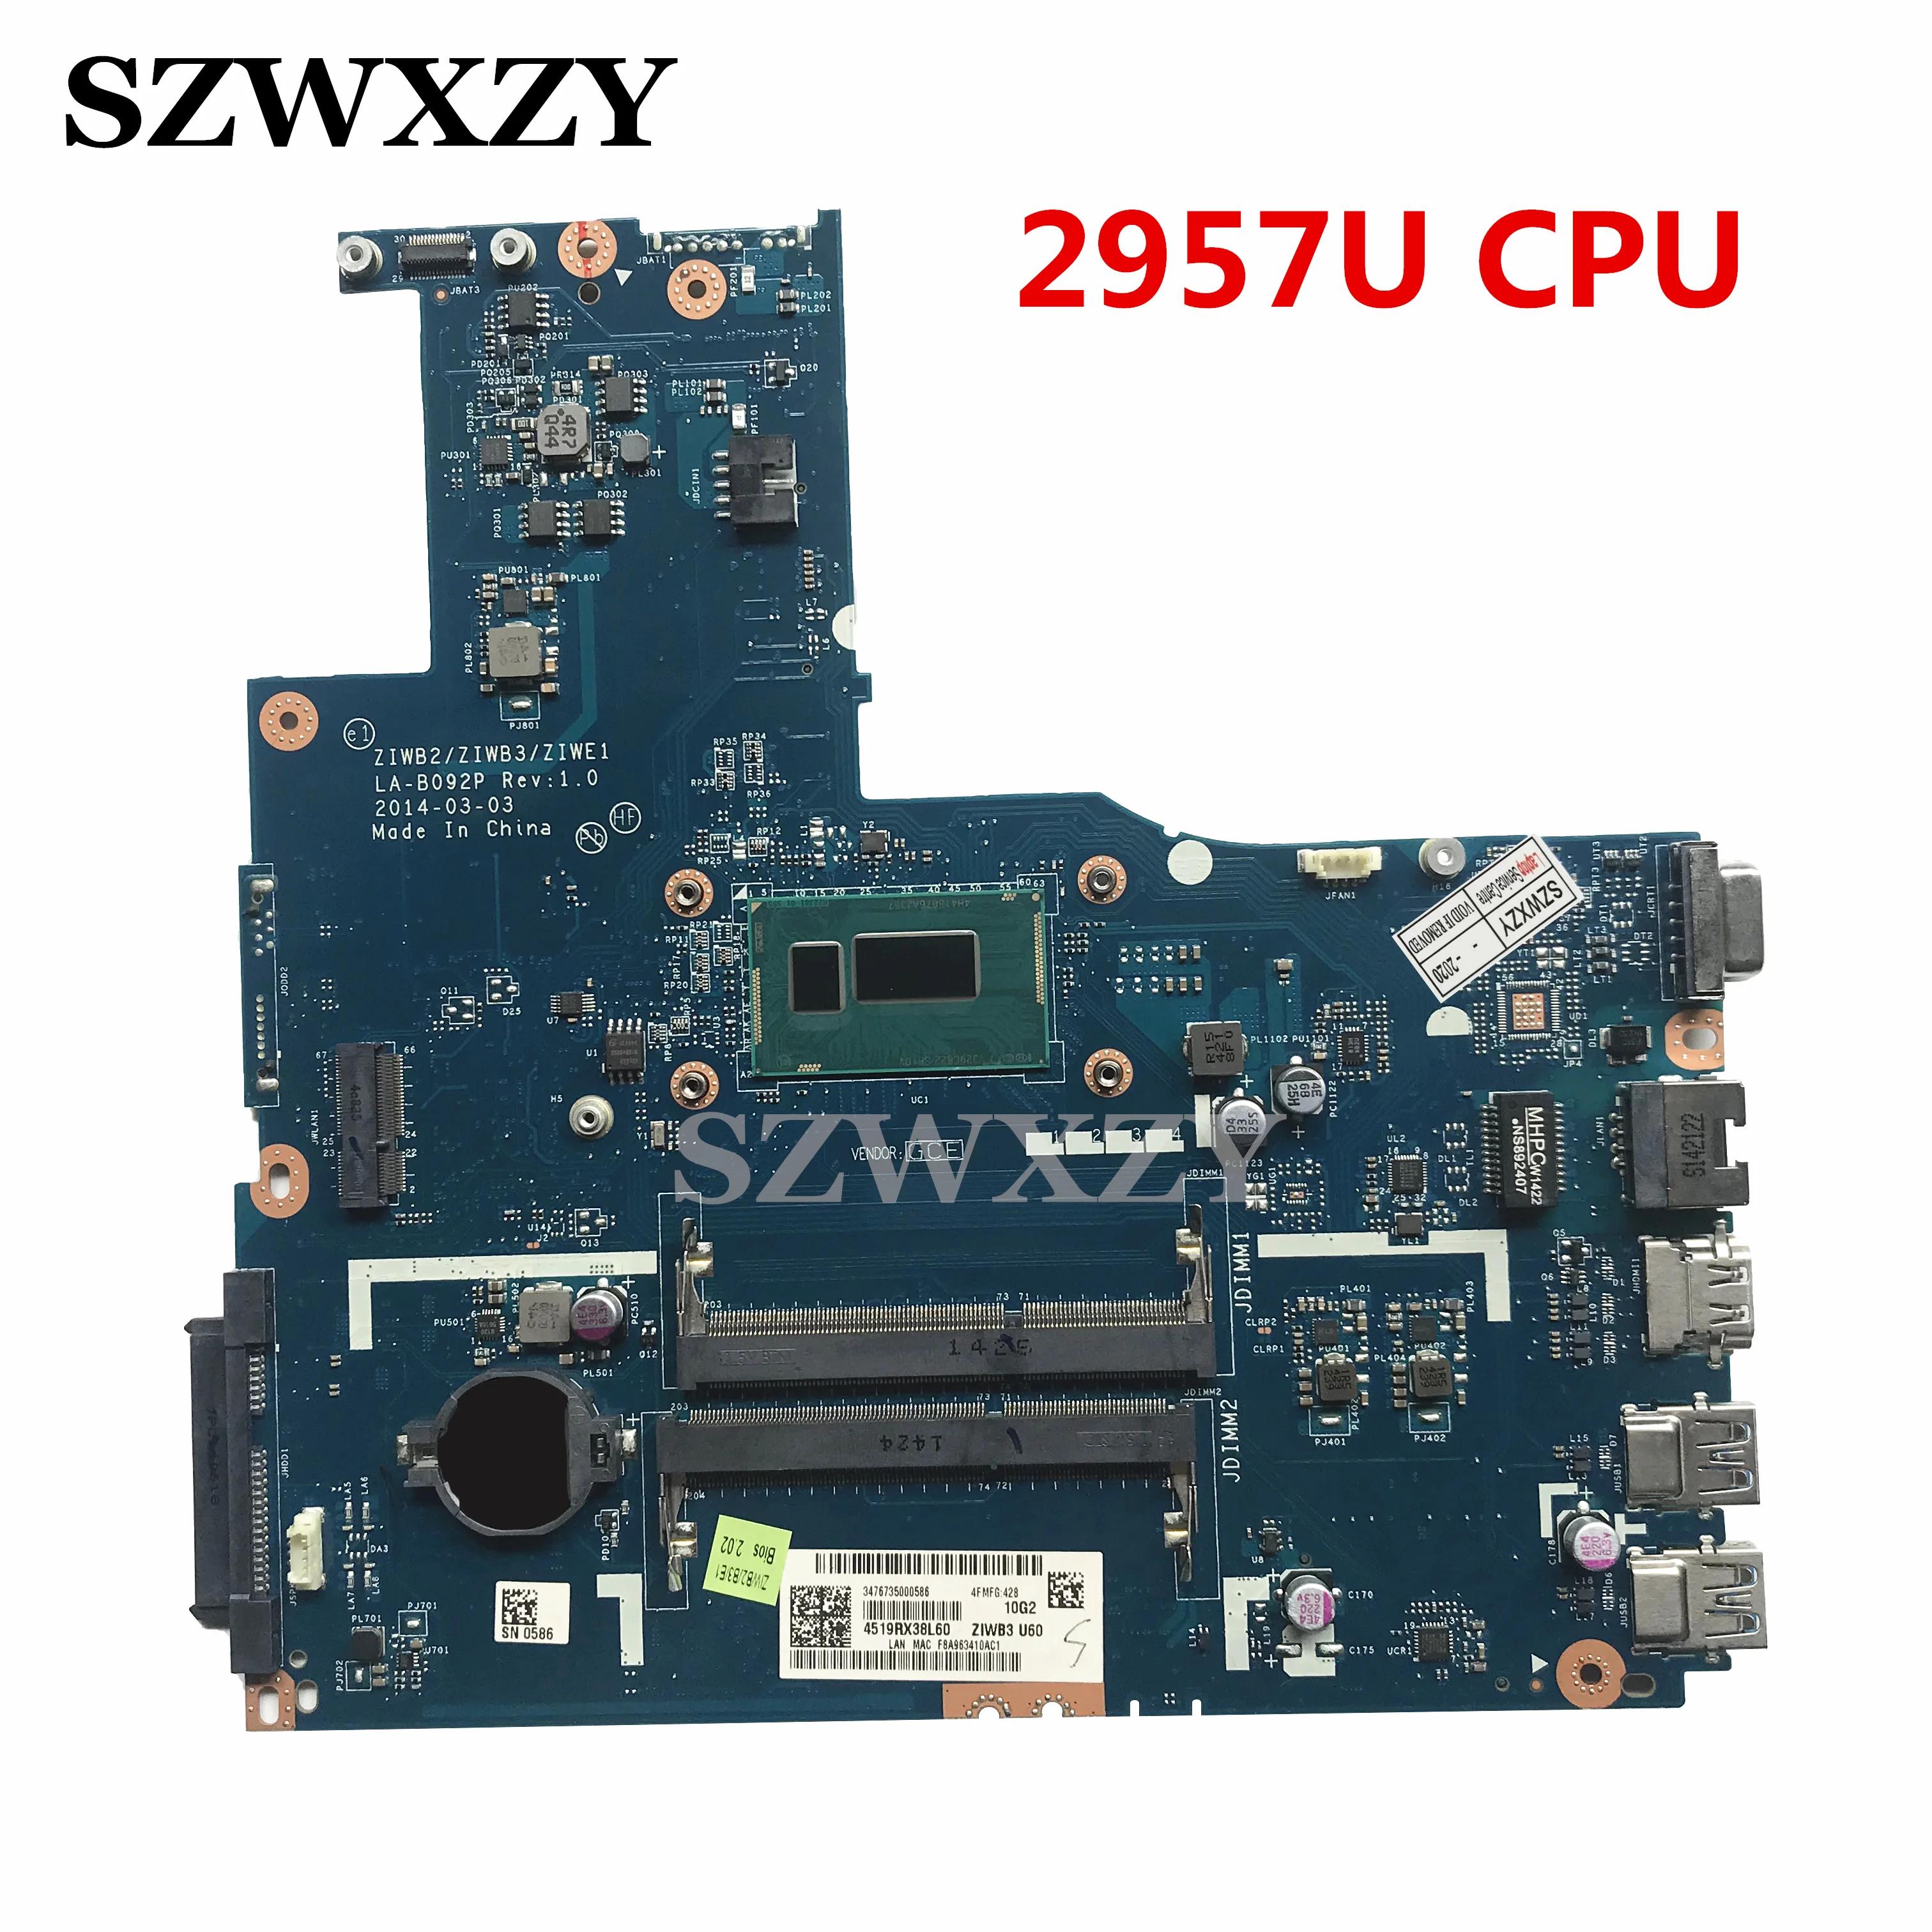  B50-70 Ʈ  LA-B092P, SR1DV 2957U CPU, 5B20G46256